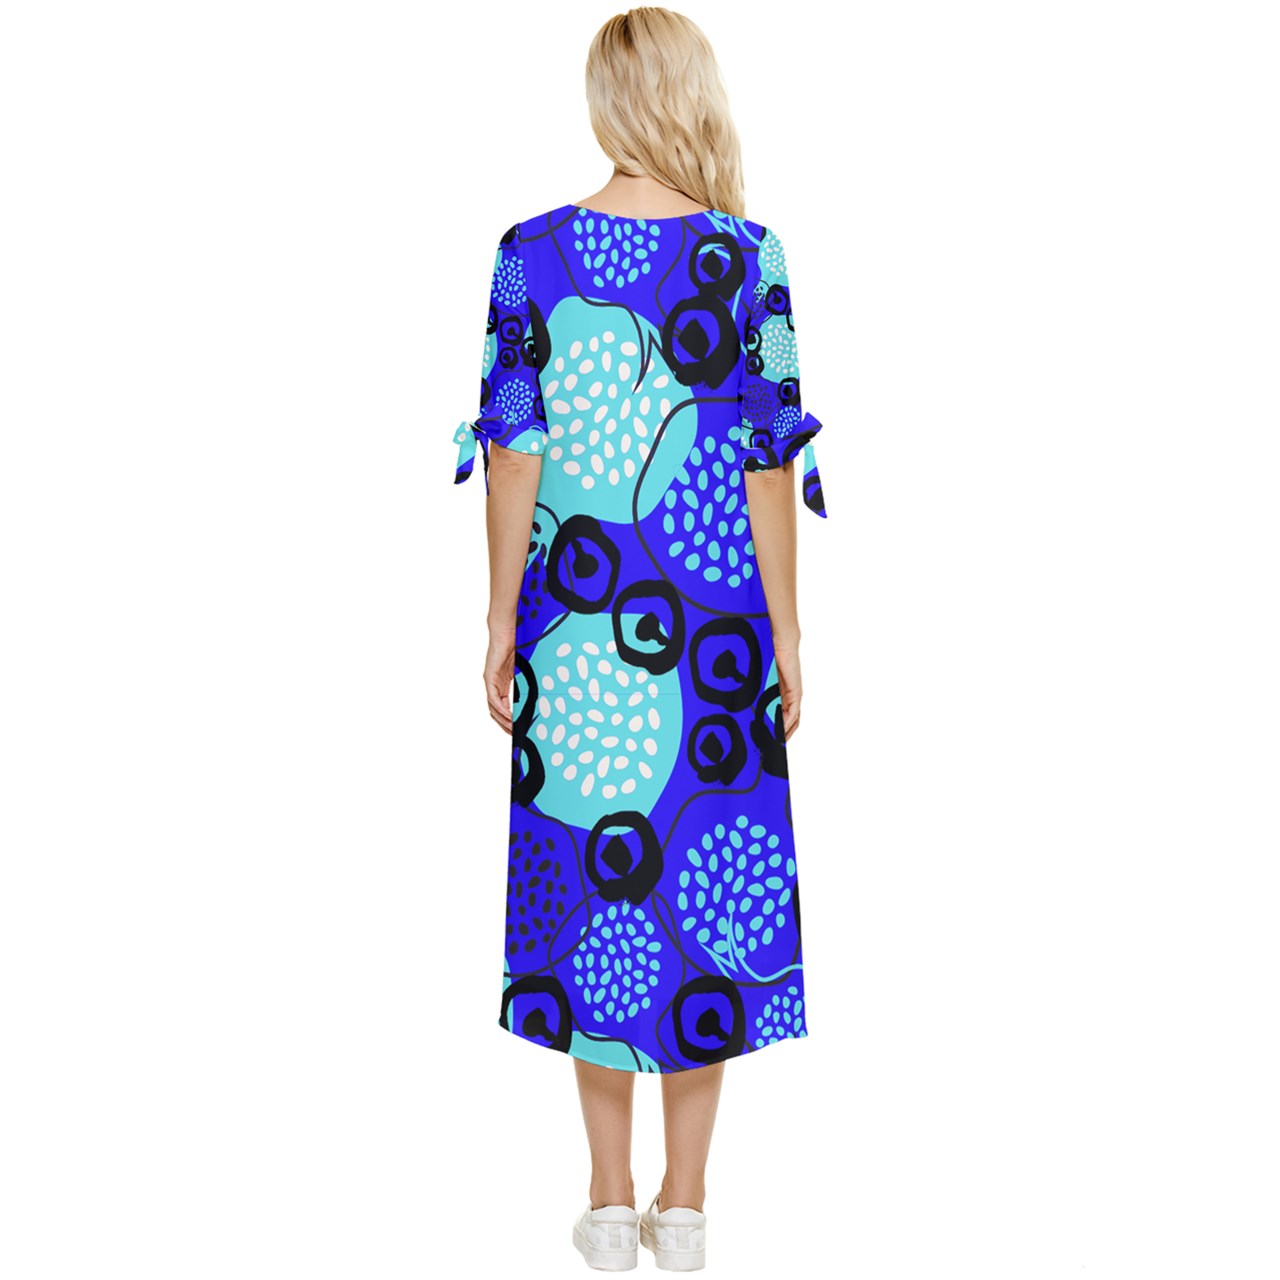 Mayi Transperant dress pattern Bow Sleeve Chiffon Midi Dress